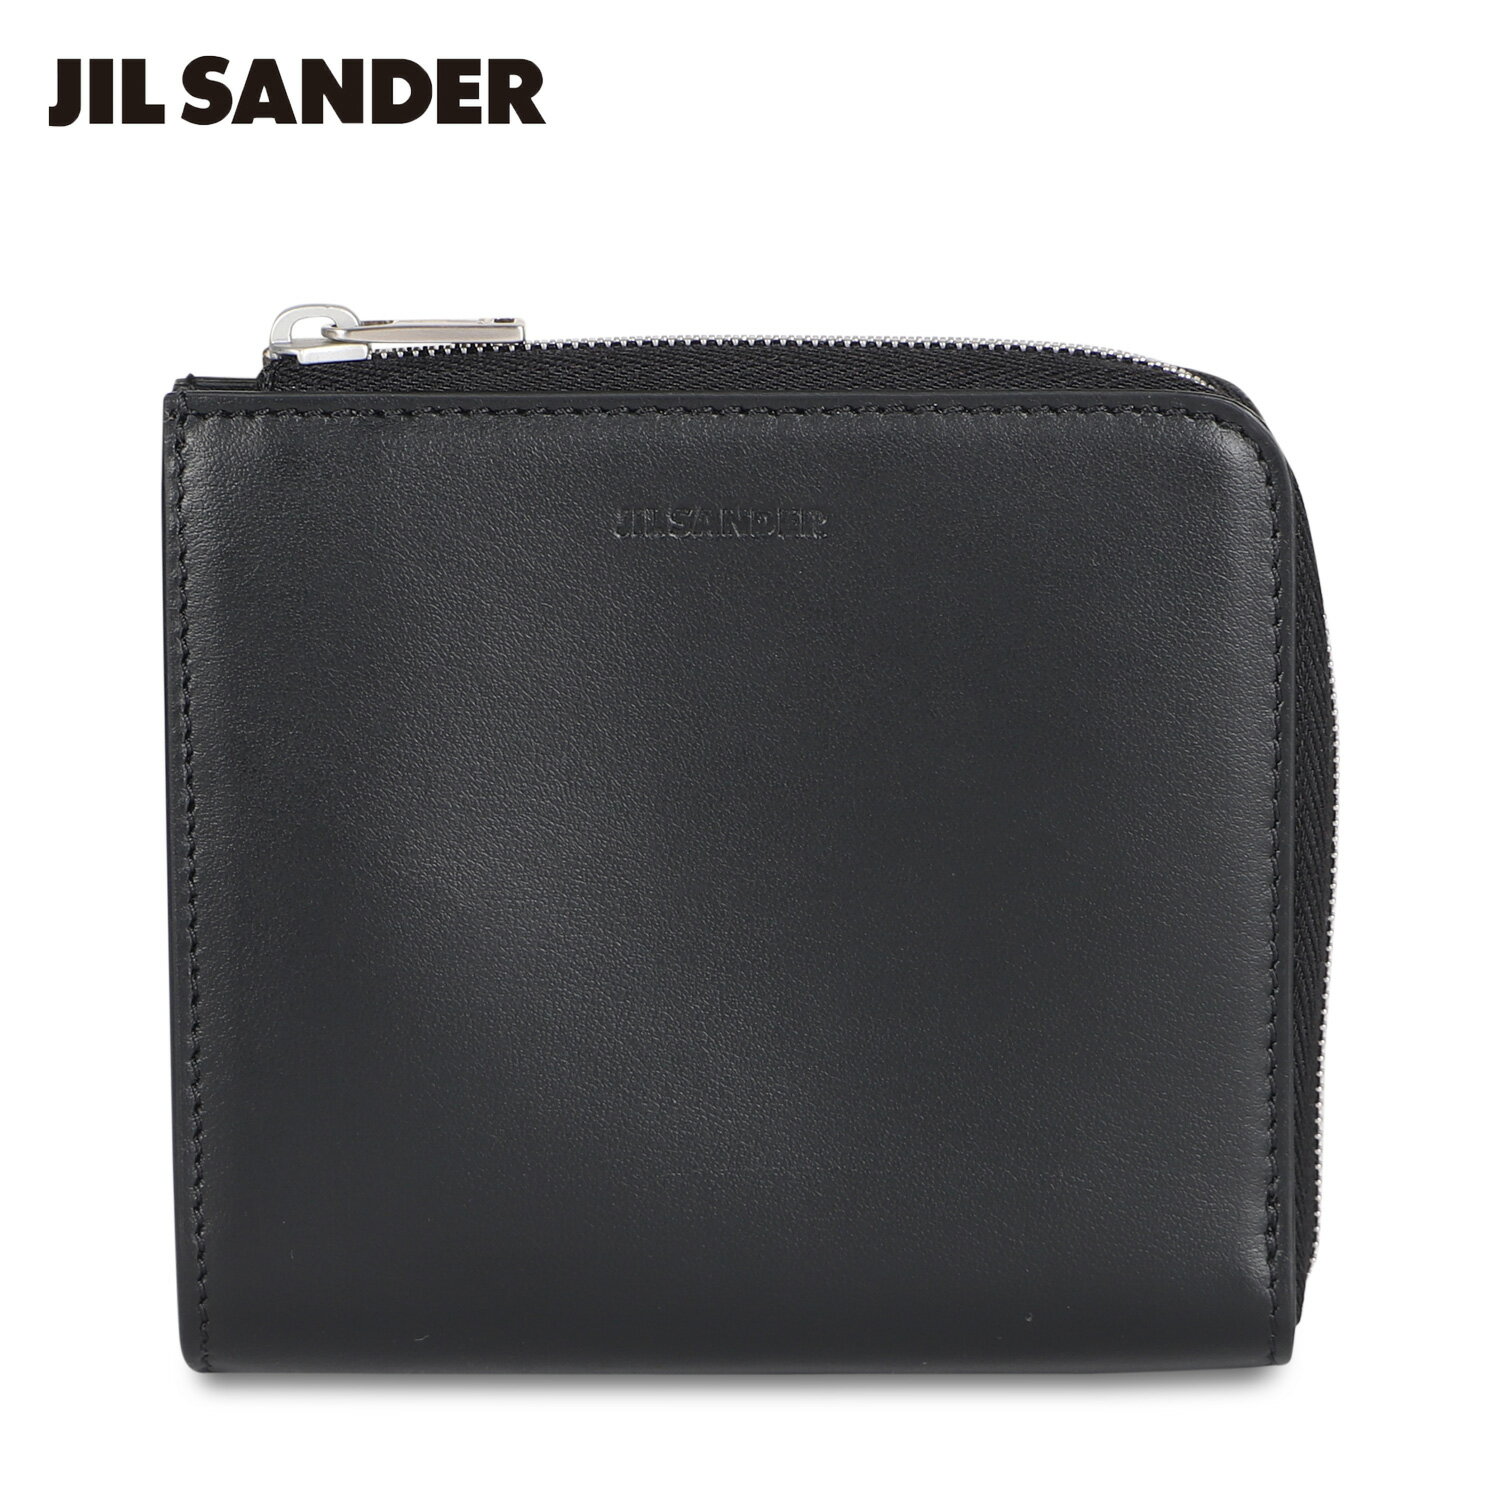 JIL SANDER ジルサンダー 財布 カードケース 名刺入れ 定期入れ メンズ レディース 本革 L字ファスナー CARD CASE ブラック 黒 J25UI0004 P4966